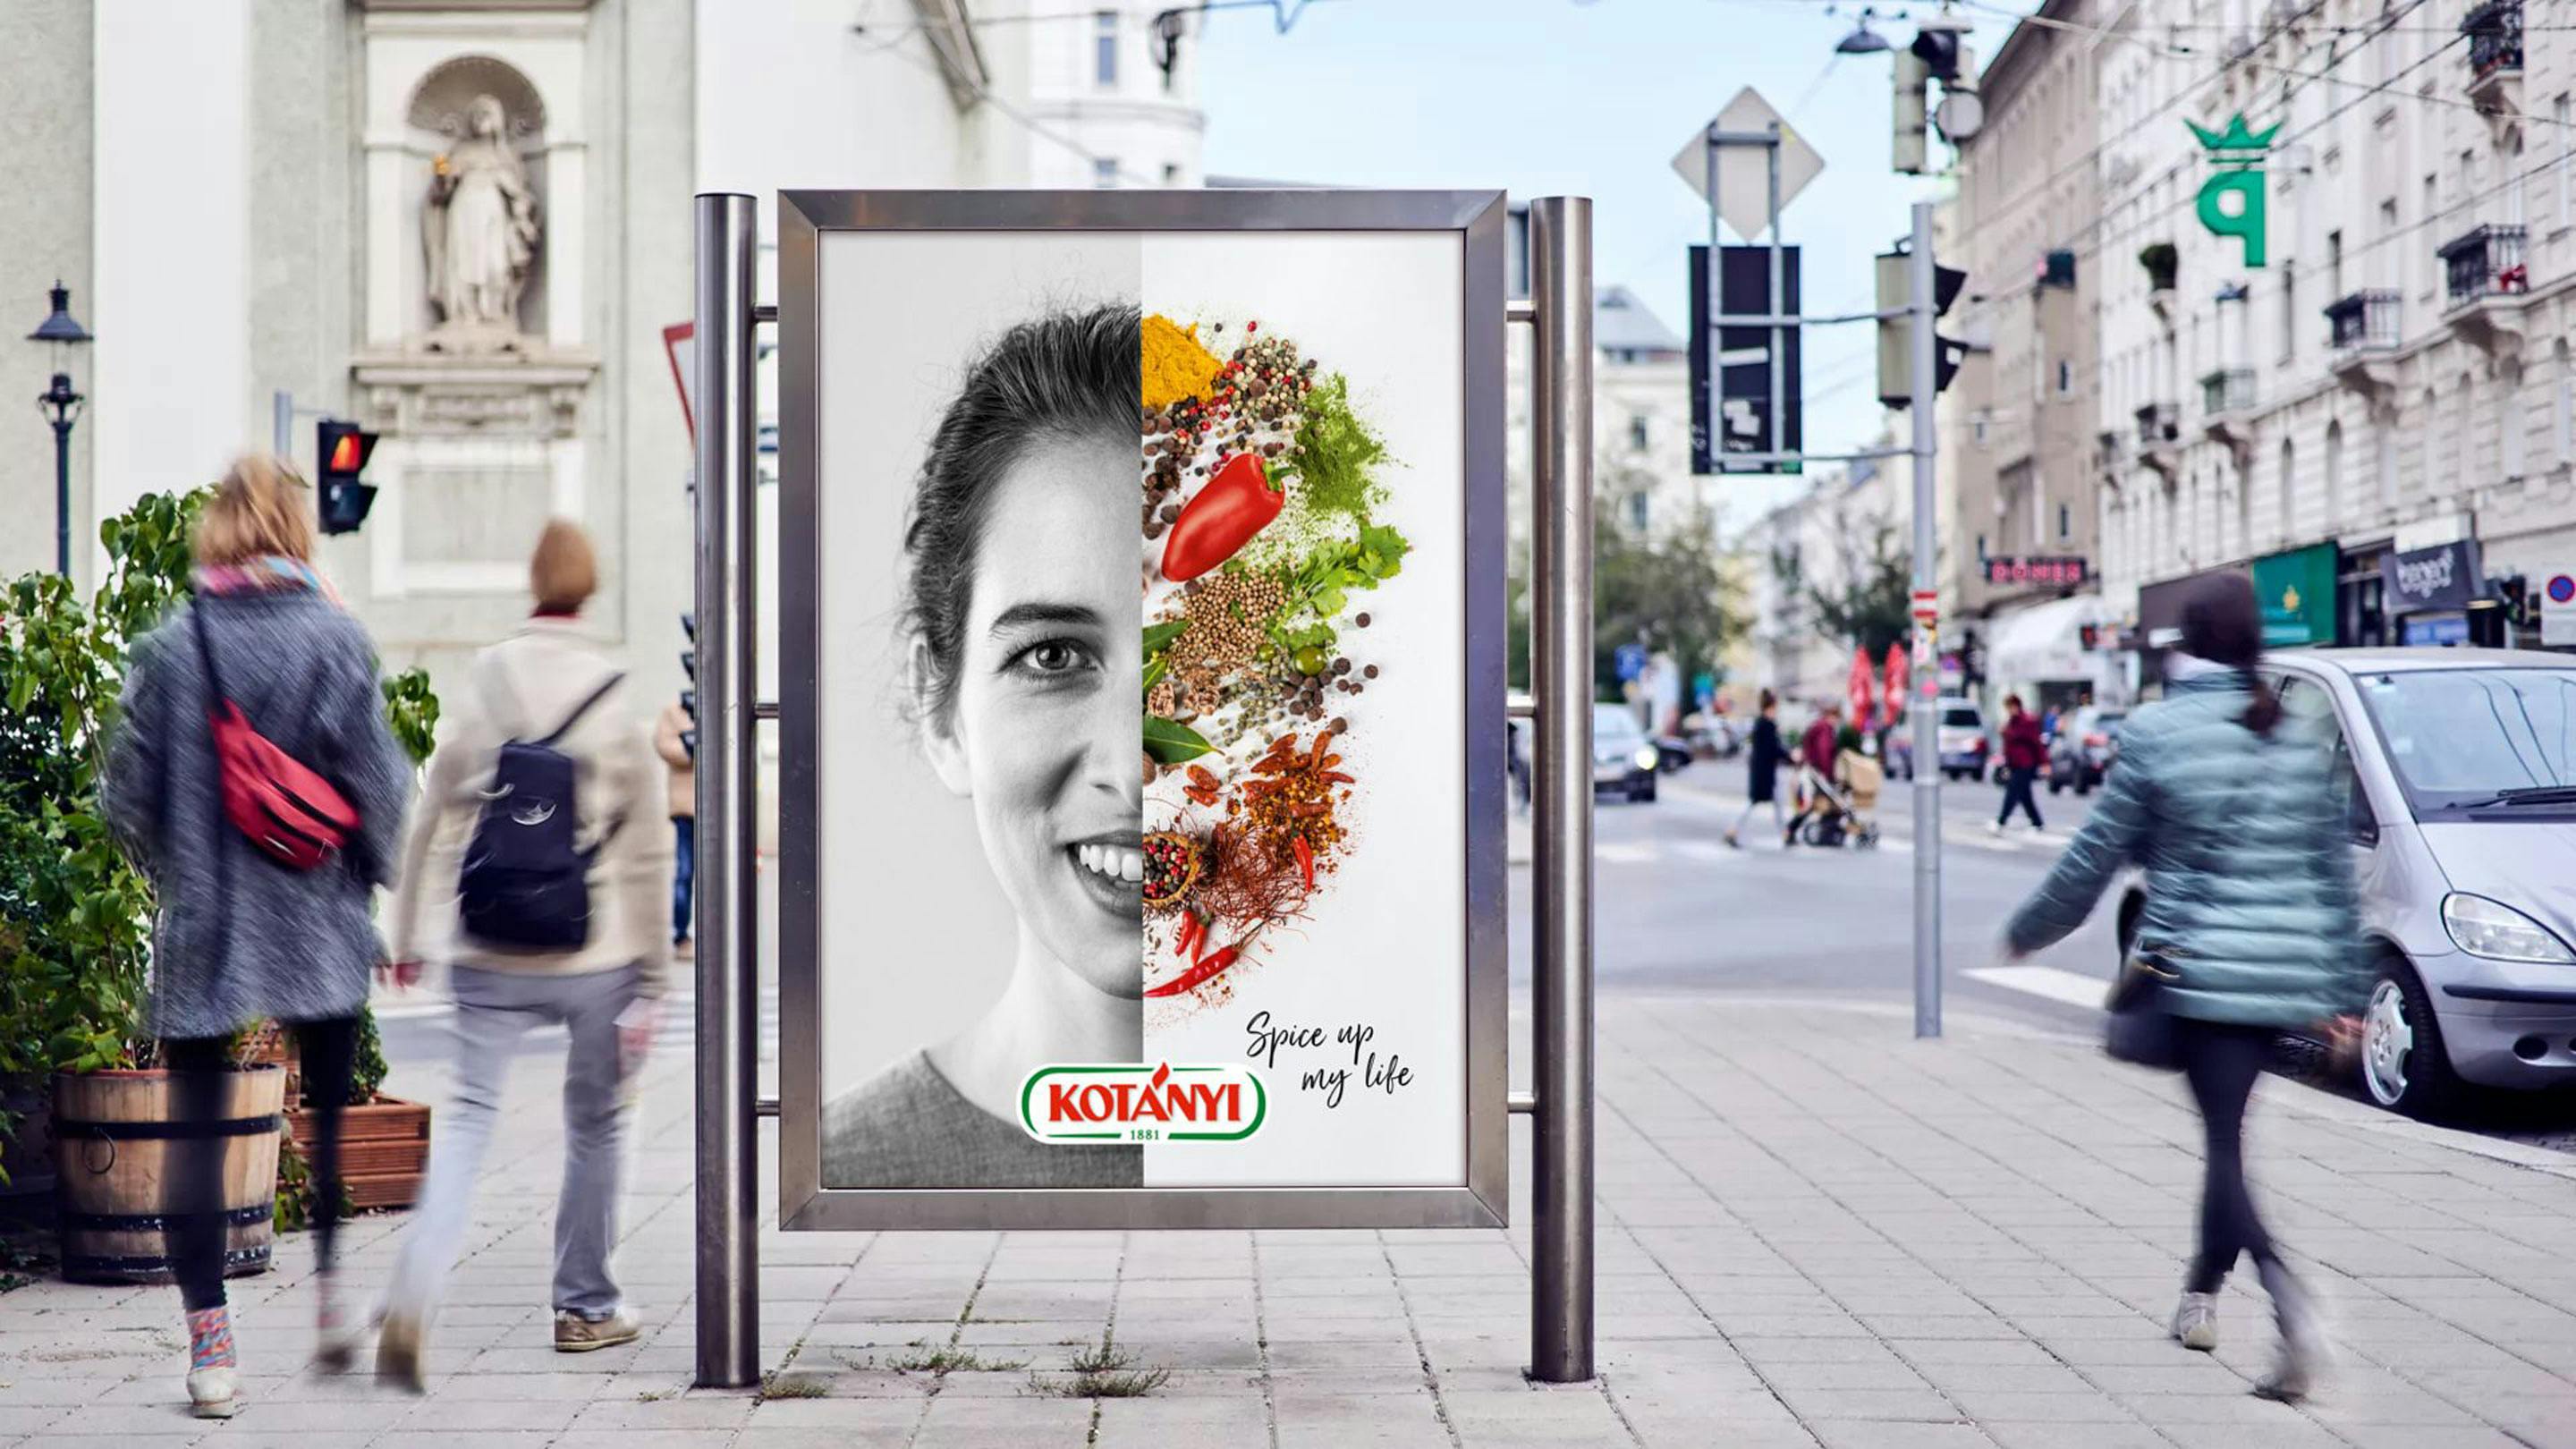 Reklama „Začini mi život“ kompanije Kotányi